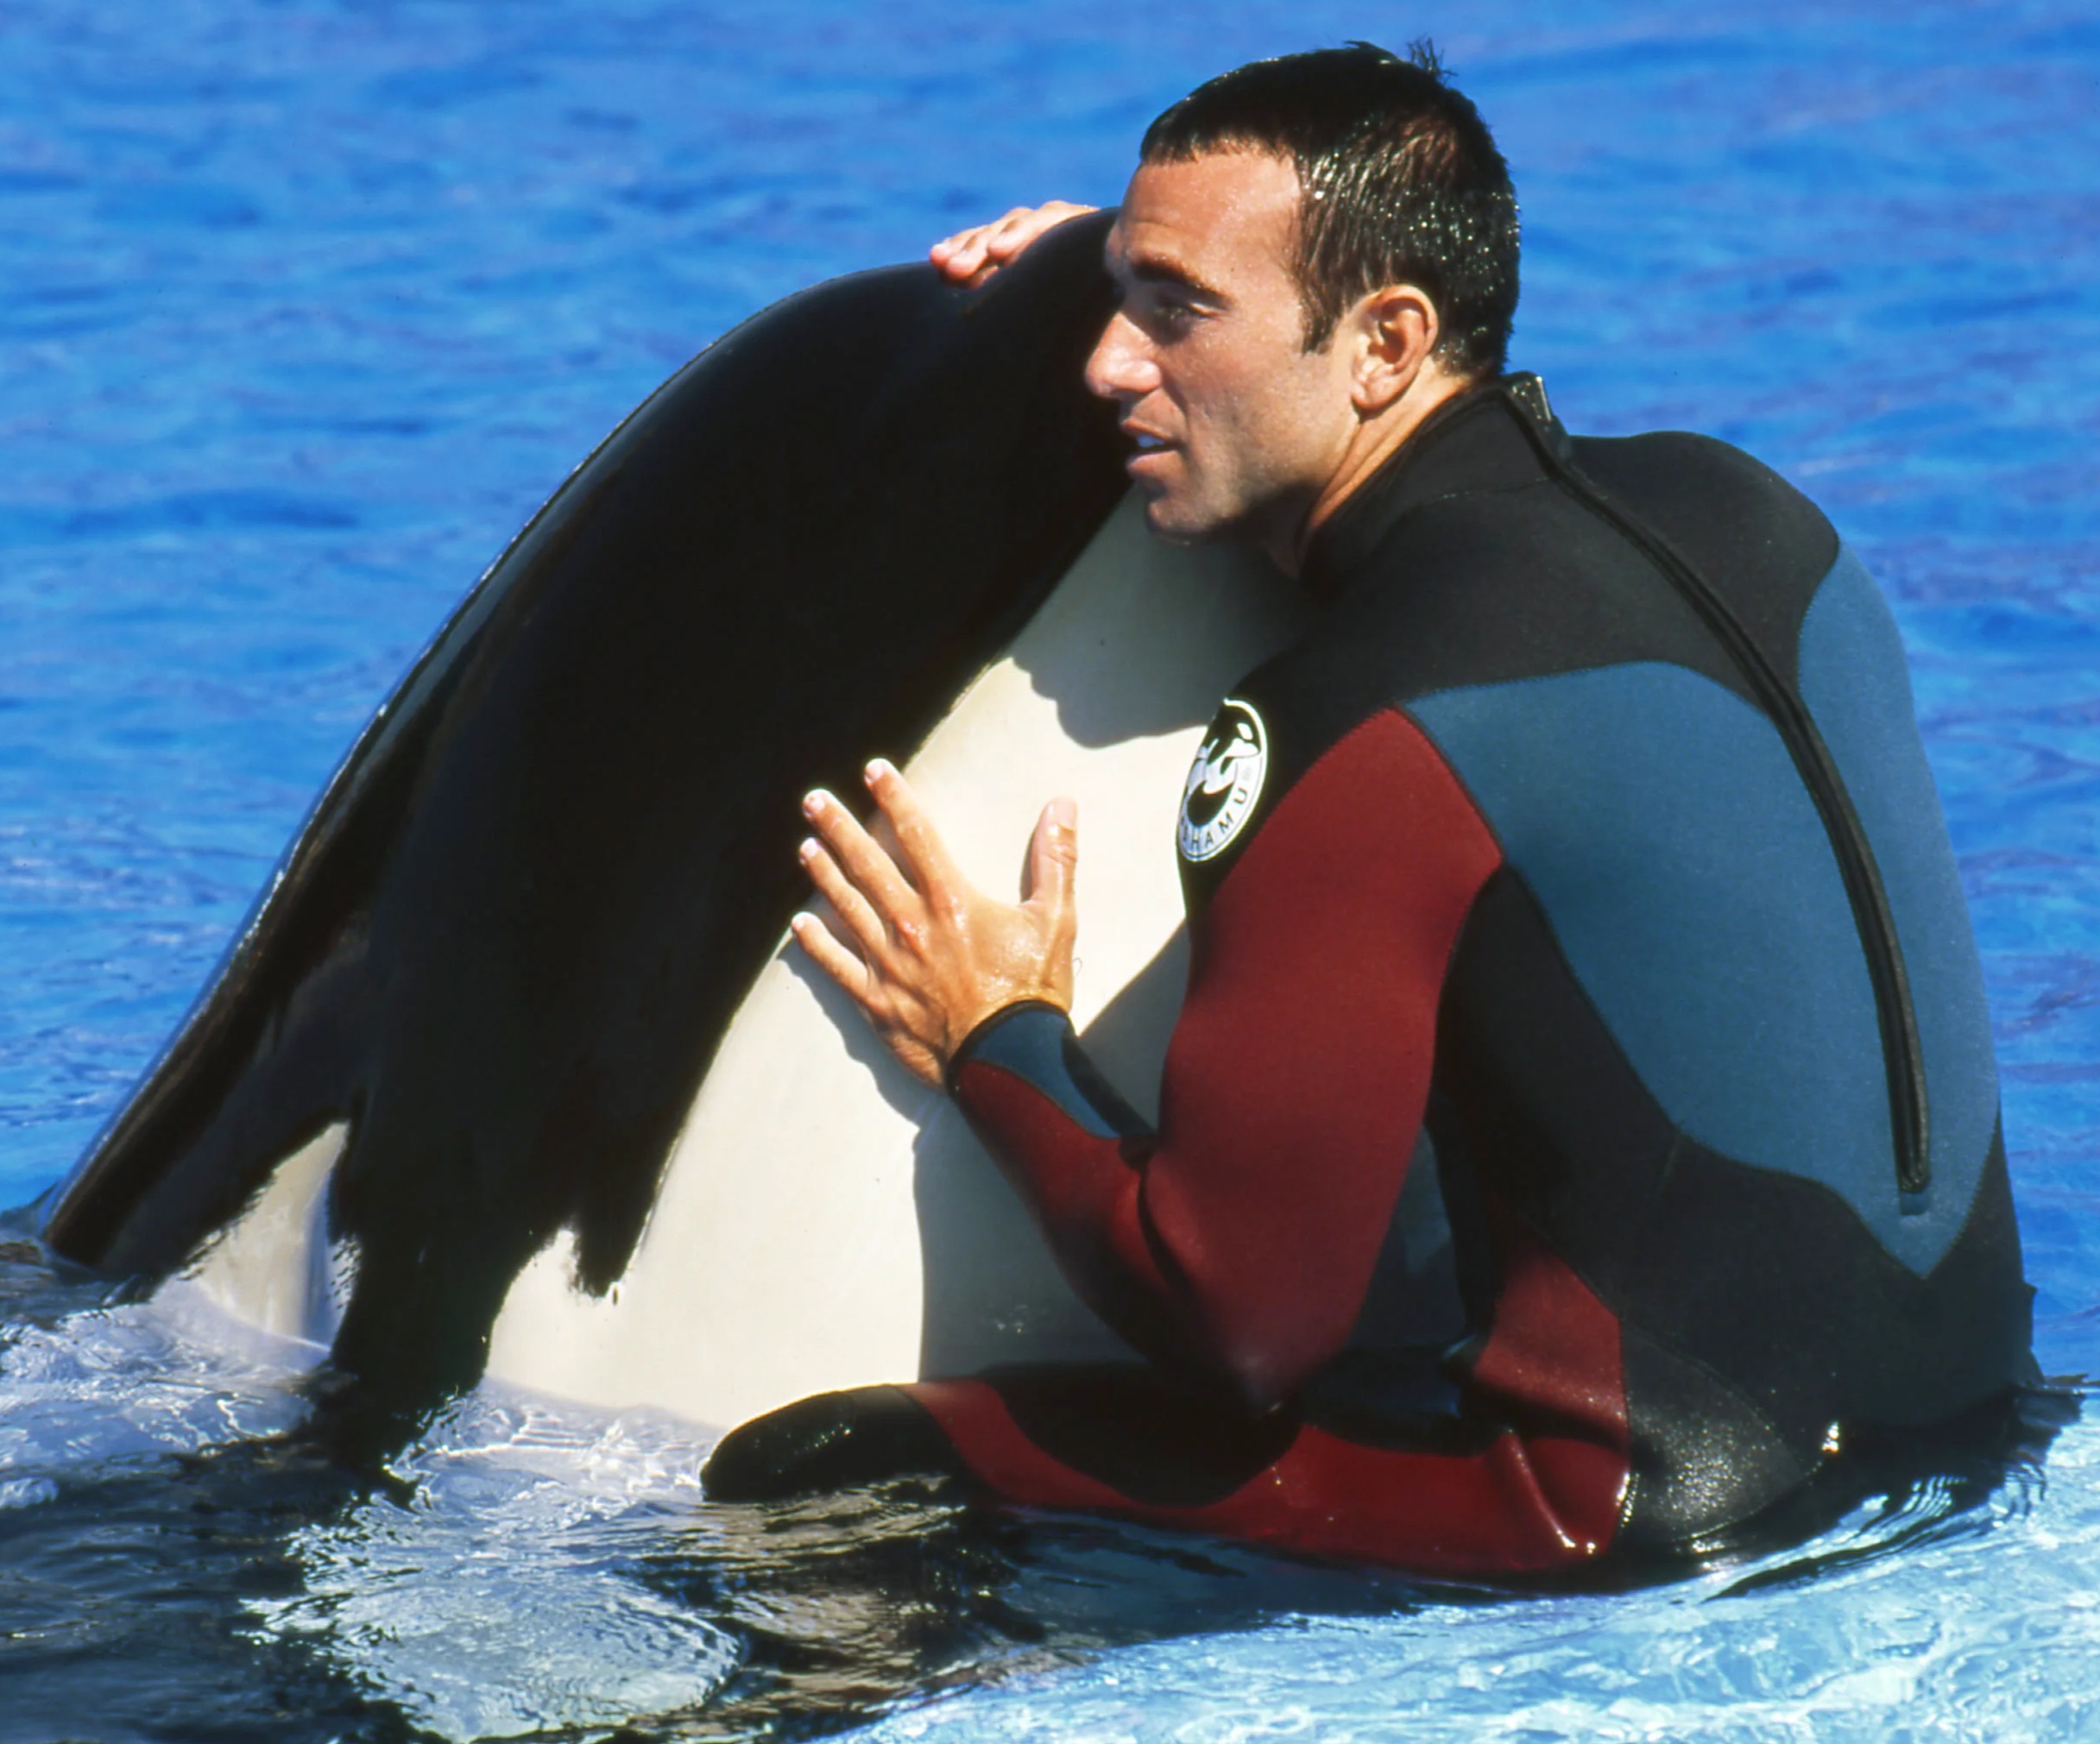 El exentrenador de SeaWorld, John Hargrove, está haciendo campaña para mejorar las condiciones de vida de las orcas en cautiverio.